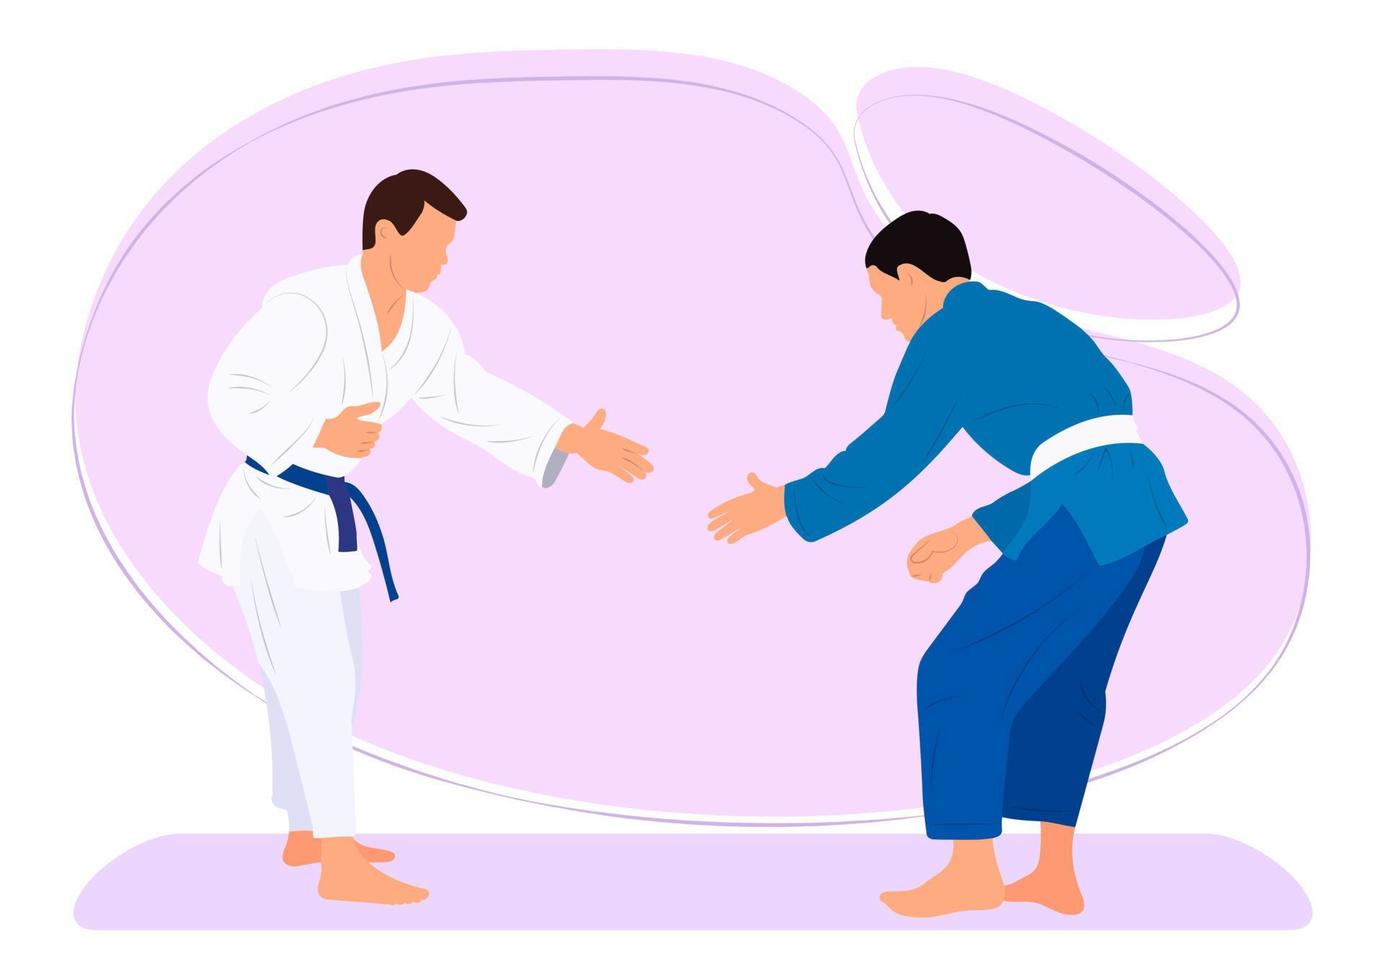 idrottare judoist, kämpe i en duell, bekämpa. judo sport, krigisk konst. platt stil. vektor